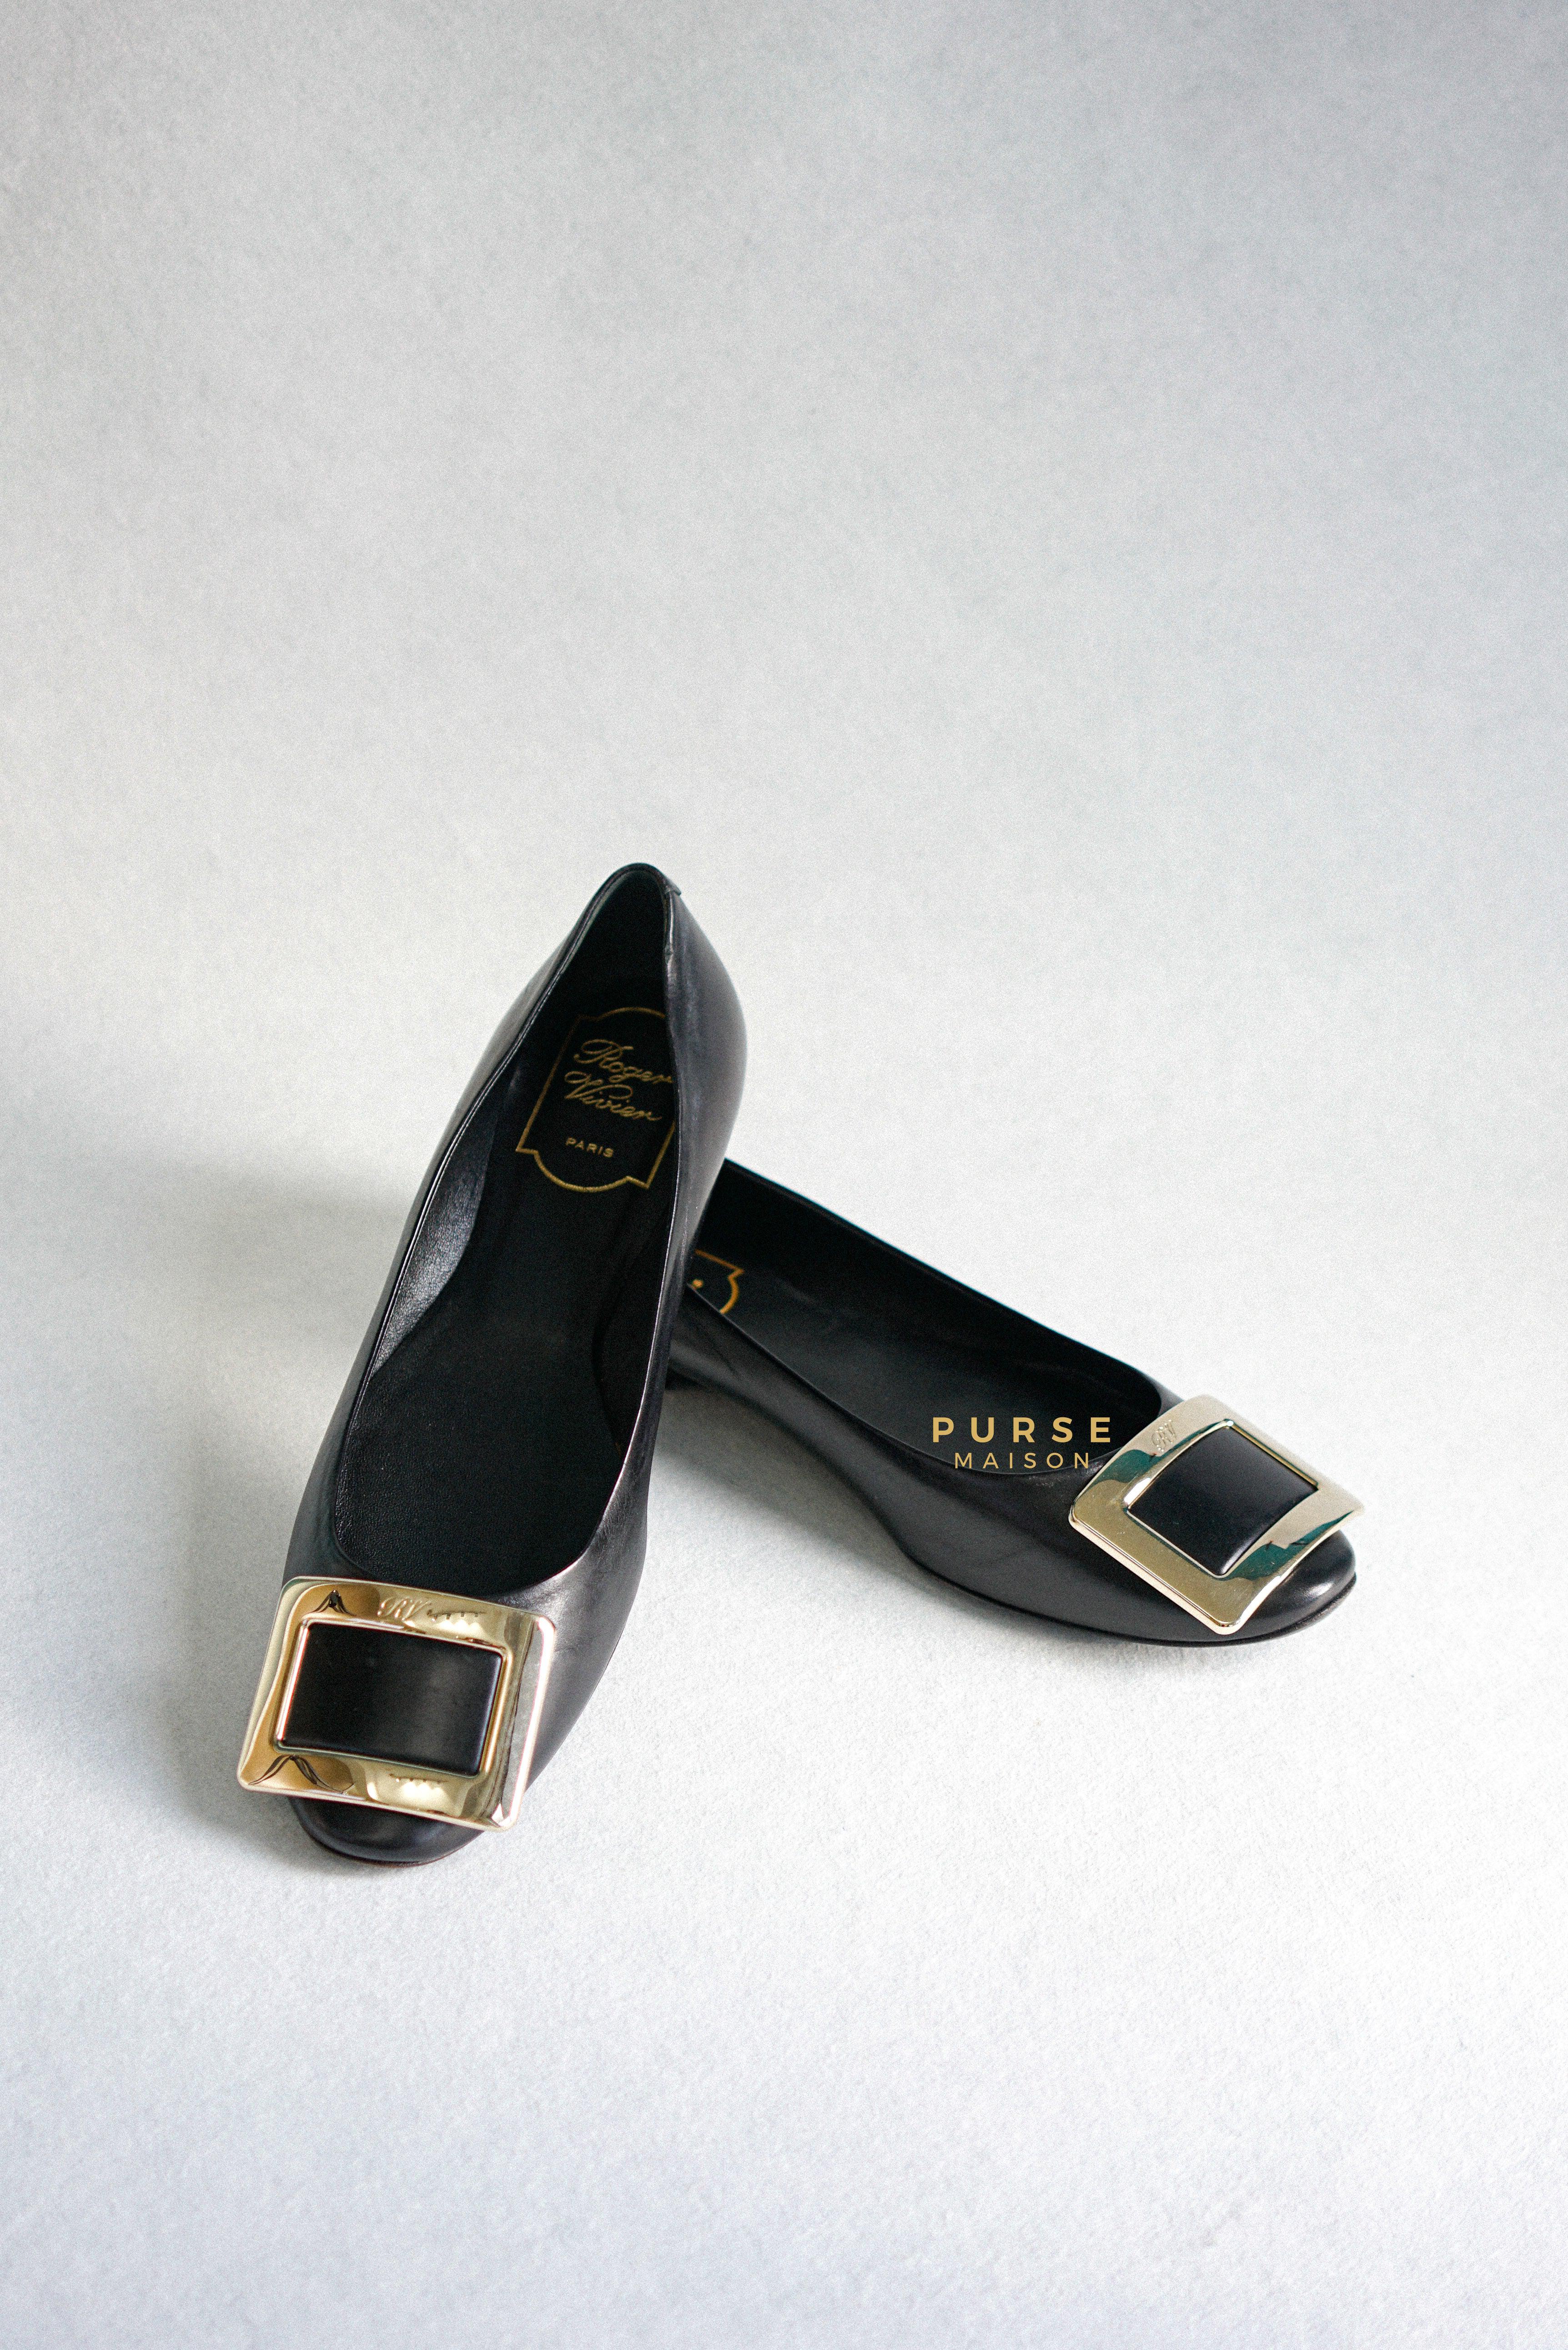 Roger Vivier Black Ballerine Belle Vivier Shoes Size 36.5 (24cm) | Purse Maison Luxury Bags Shop